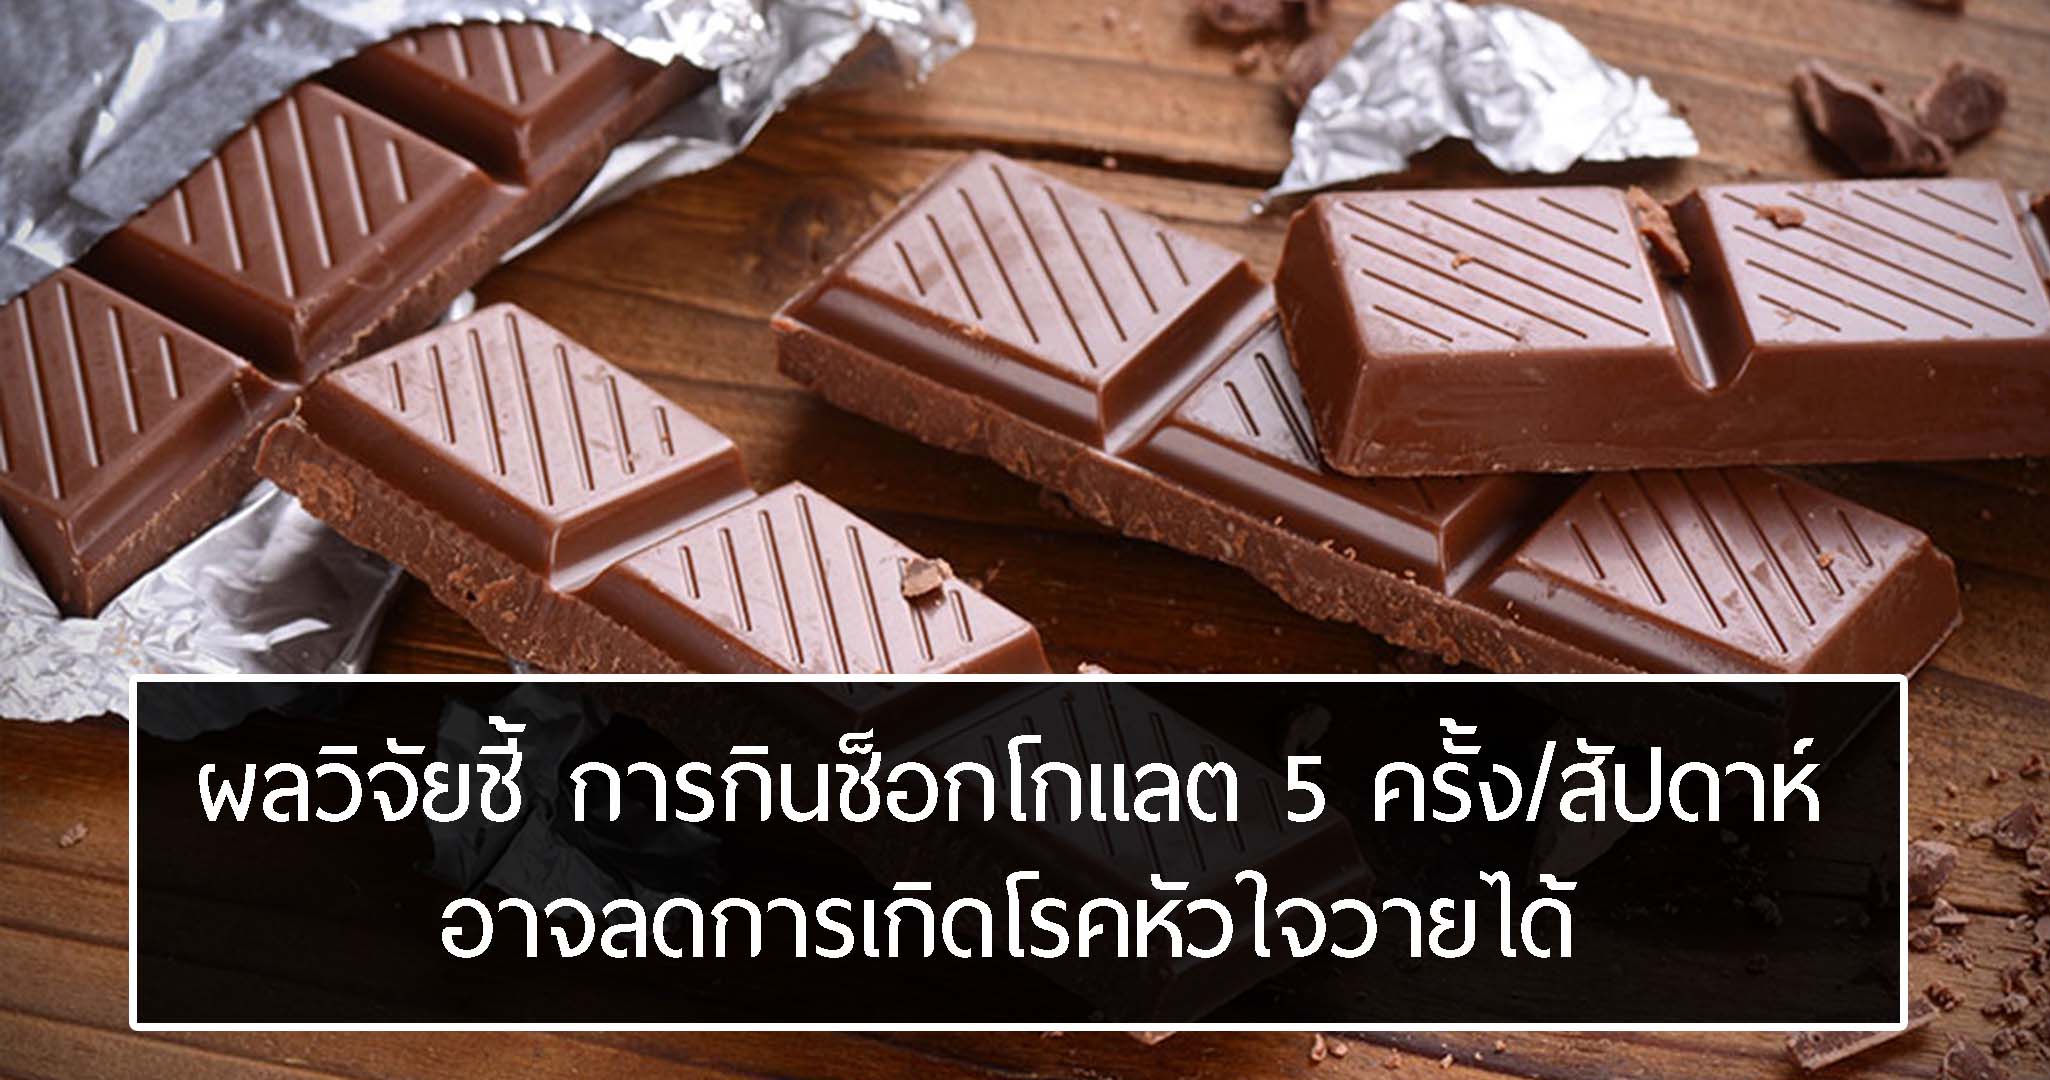 ถ้าคนอ้วนกินช็อกโกแลต 5 ครั้งต่อสัปดาห์จะช่วยป้องกันไม่ให้พวกเขาเกิดโรคหัวใจวายได้